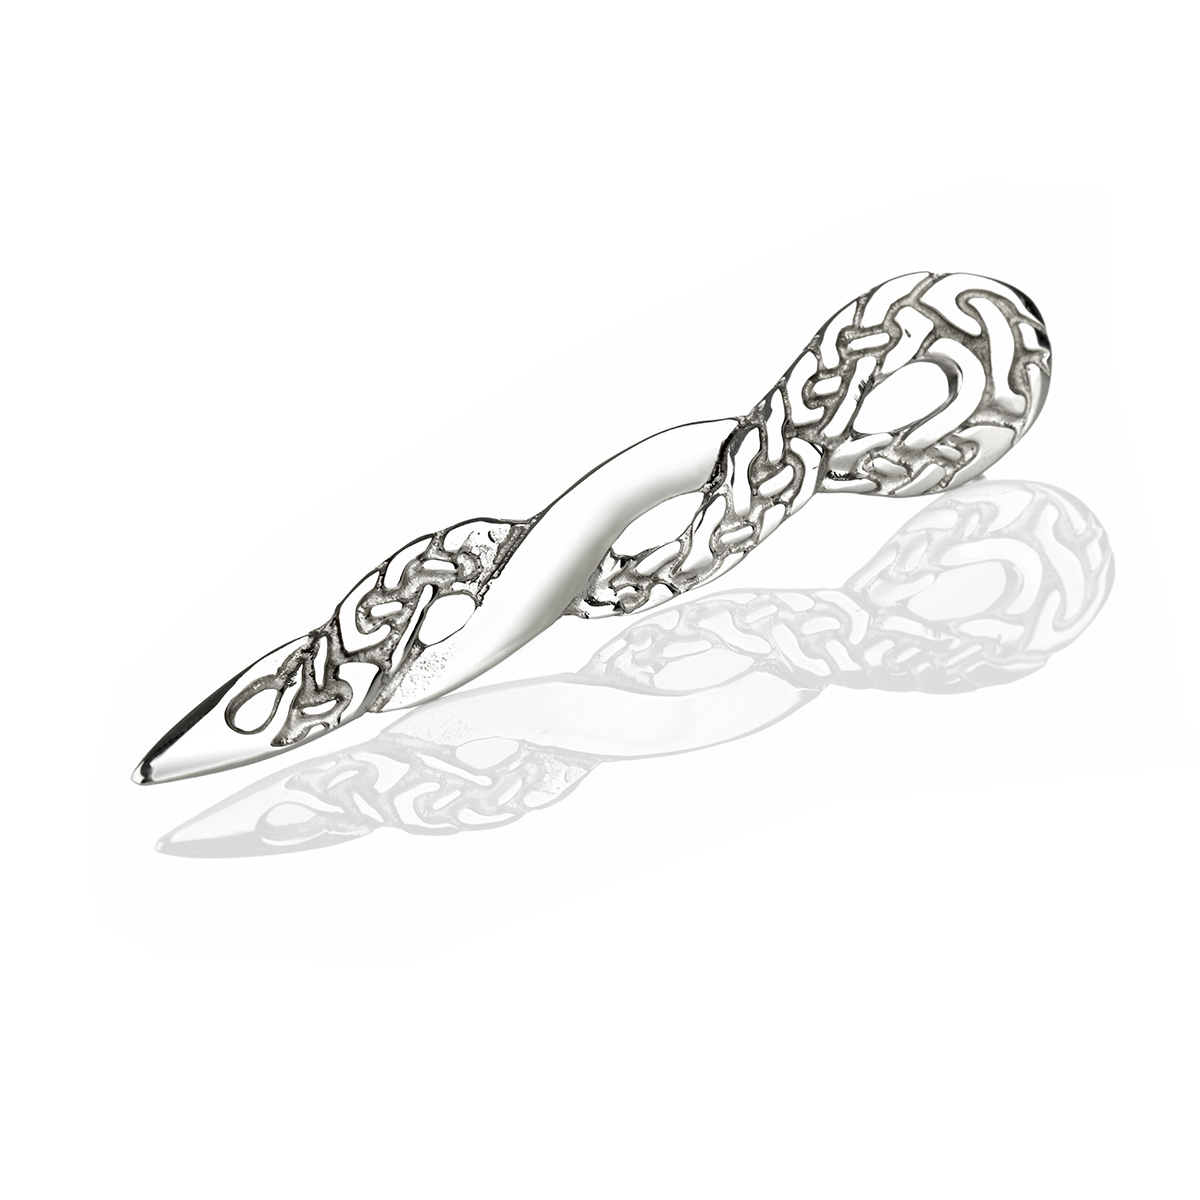 The Infinite Knot Kilt Pin aus Schottland - mit keltischen Ornamenten